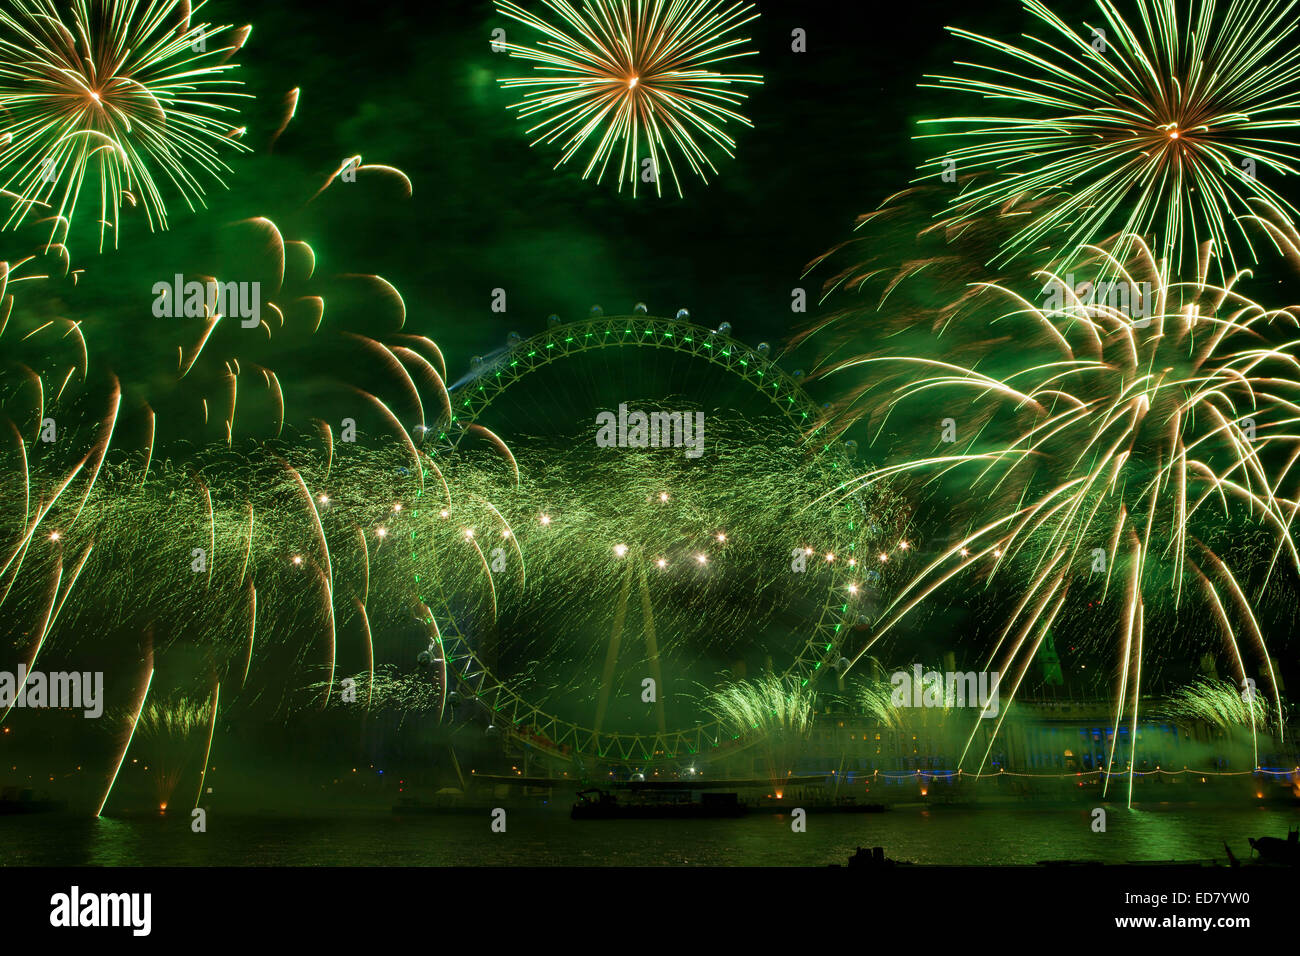 Le centre de Londres, UK 1 Janvier 2015 pyrotechnie artifice du London Eye inaugure une nouvelle année à célébrer la nouvelle année avec l'assemblée annuelle d'artifice Crédit : Richard Soans/Alamy Live News Banque D'Images